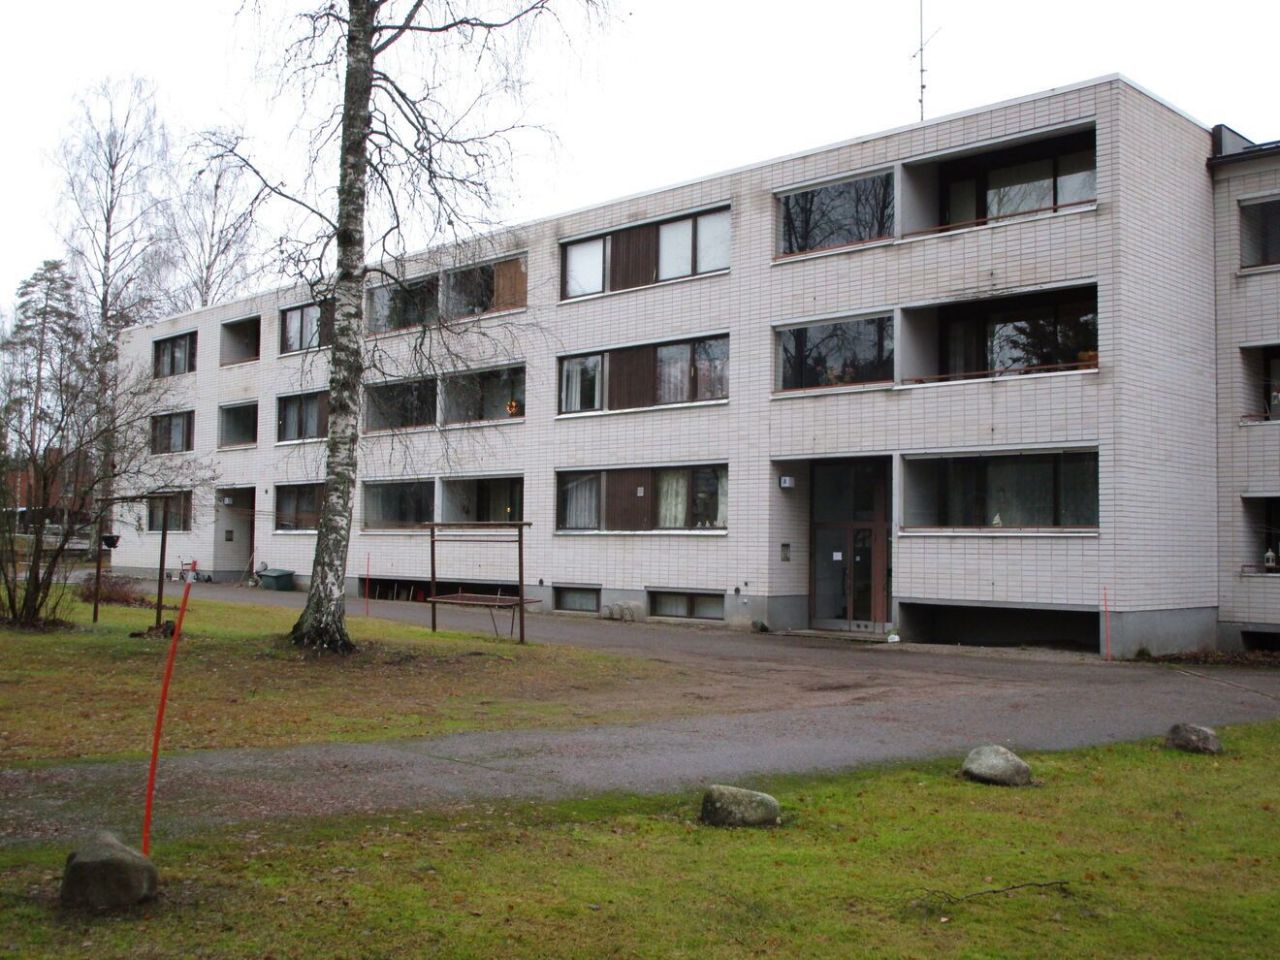 Flat in Luumaki, Finland, 53 sq.m - picture 1